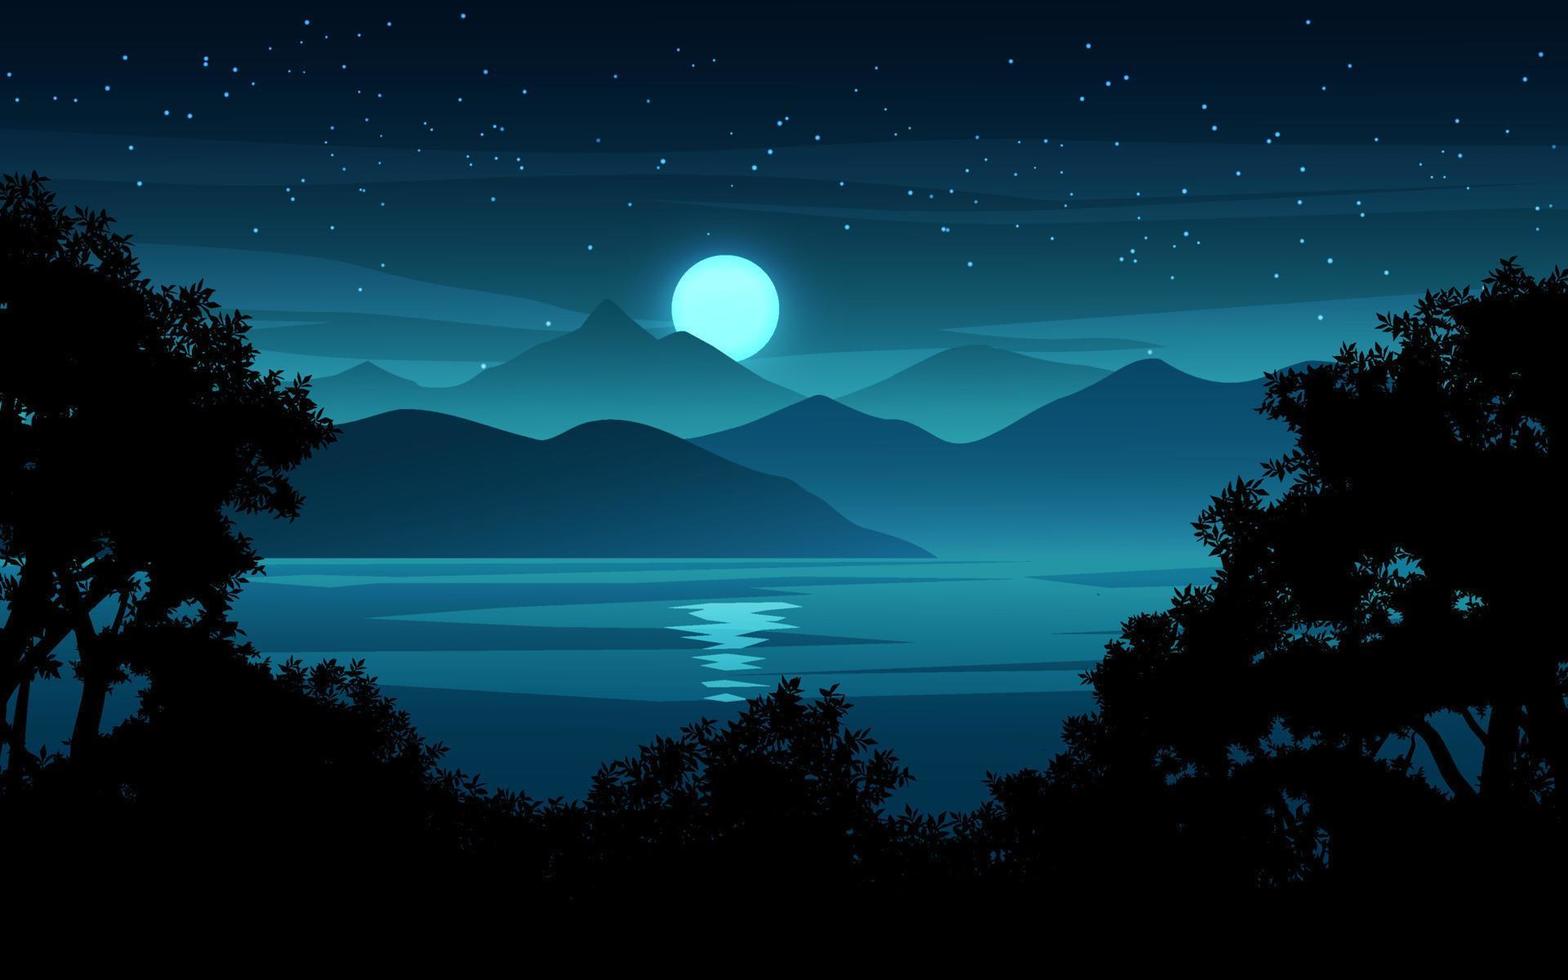 paesaggio notturno di lago e montagna con luna piena e stelle vettore